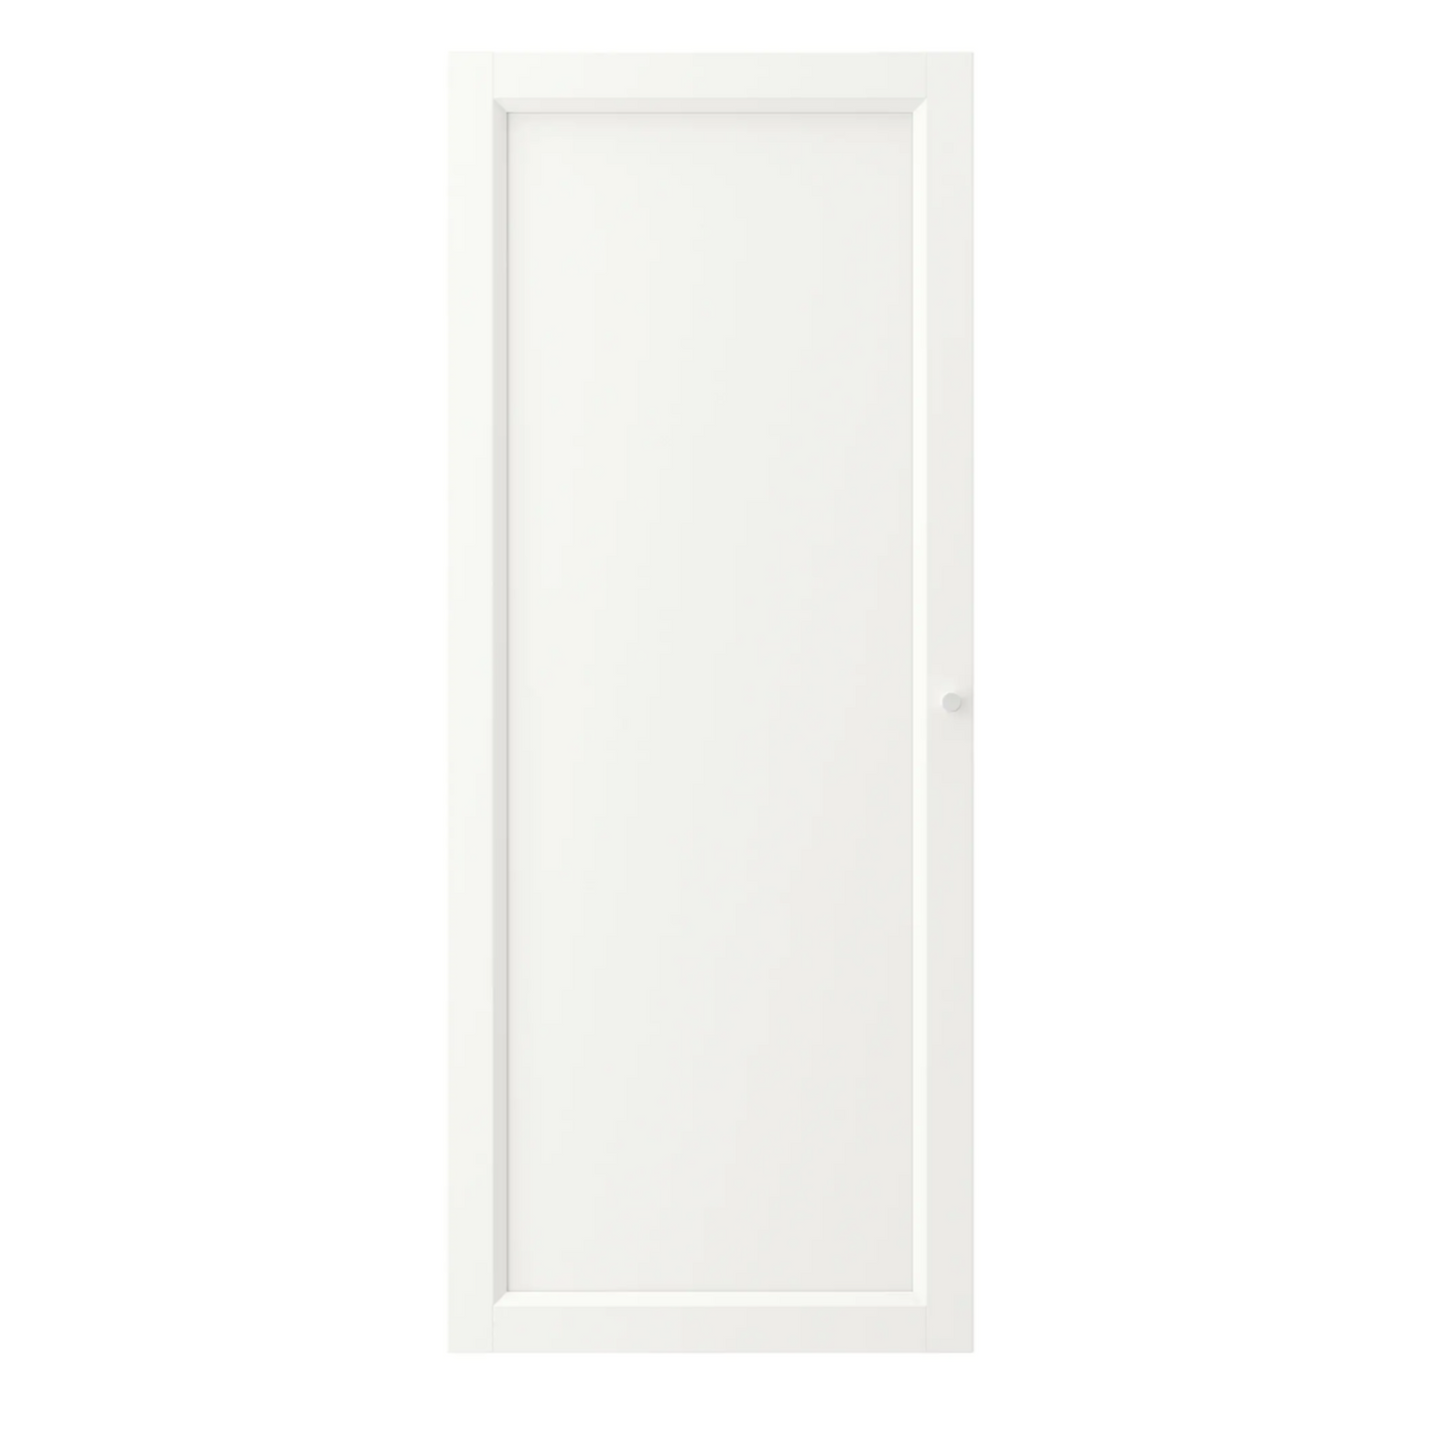 IKEA Billy/Oxberg Solid Door 40x97cm, White (4571260682305)